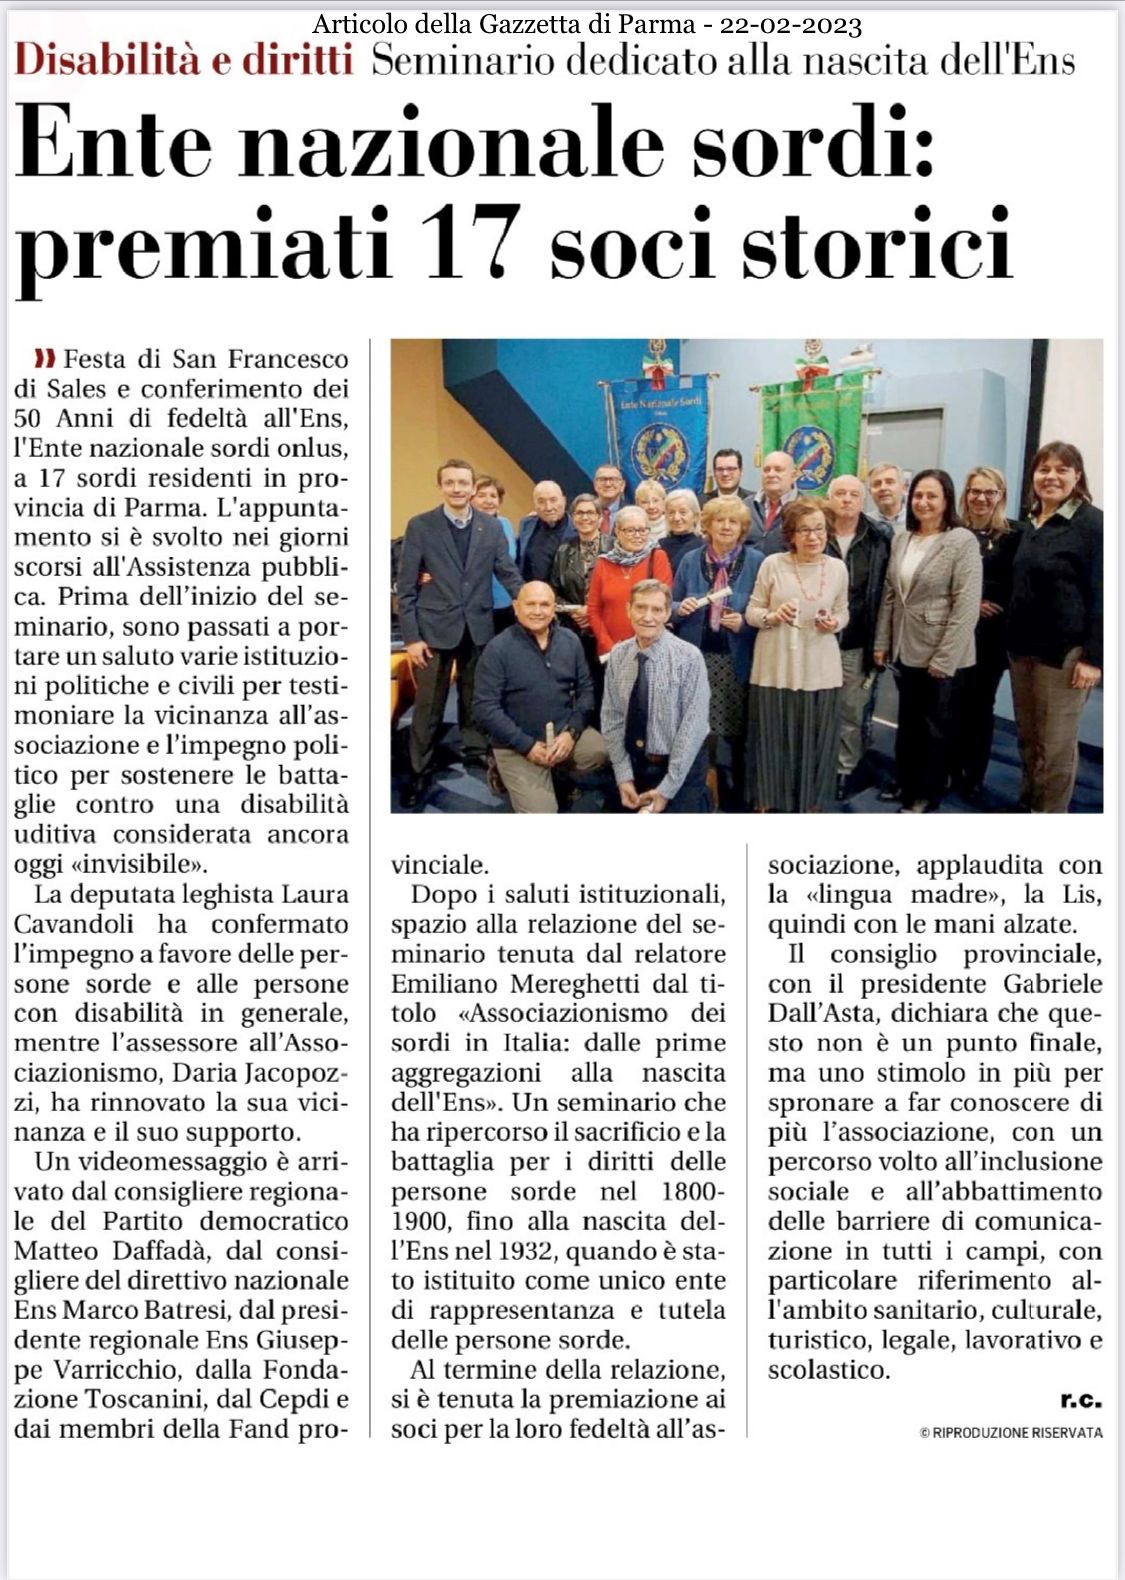 Gazzetta di Parma - Mercoledì 22 Febbraio 2023.jpeg